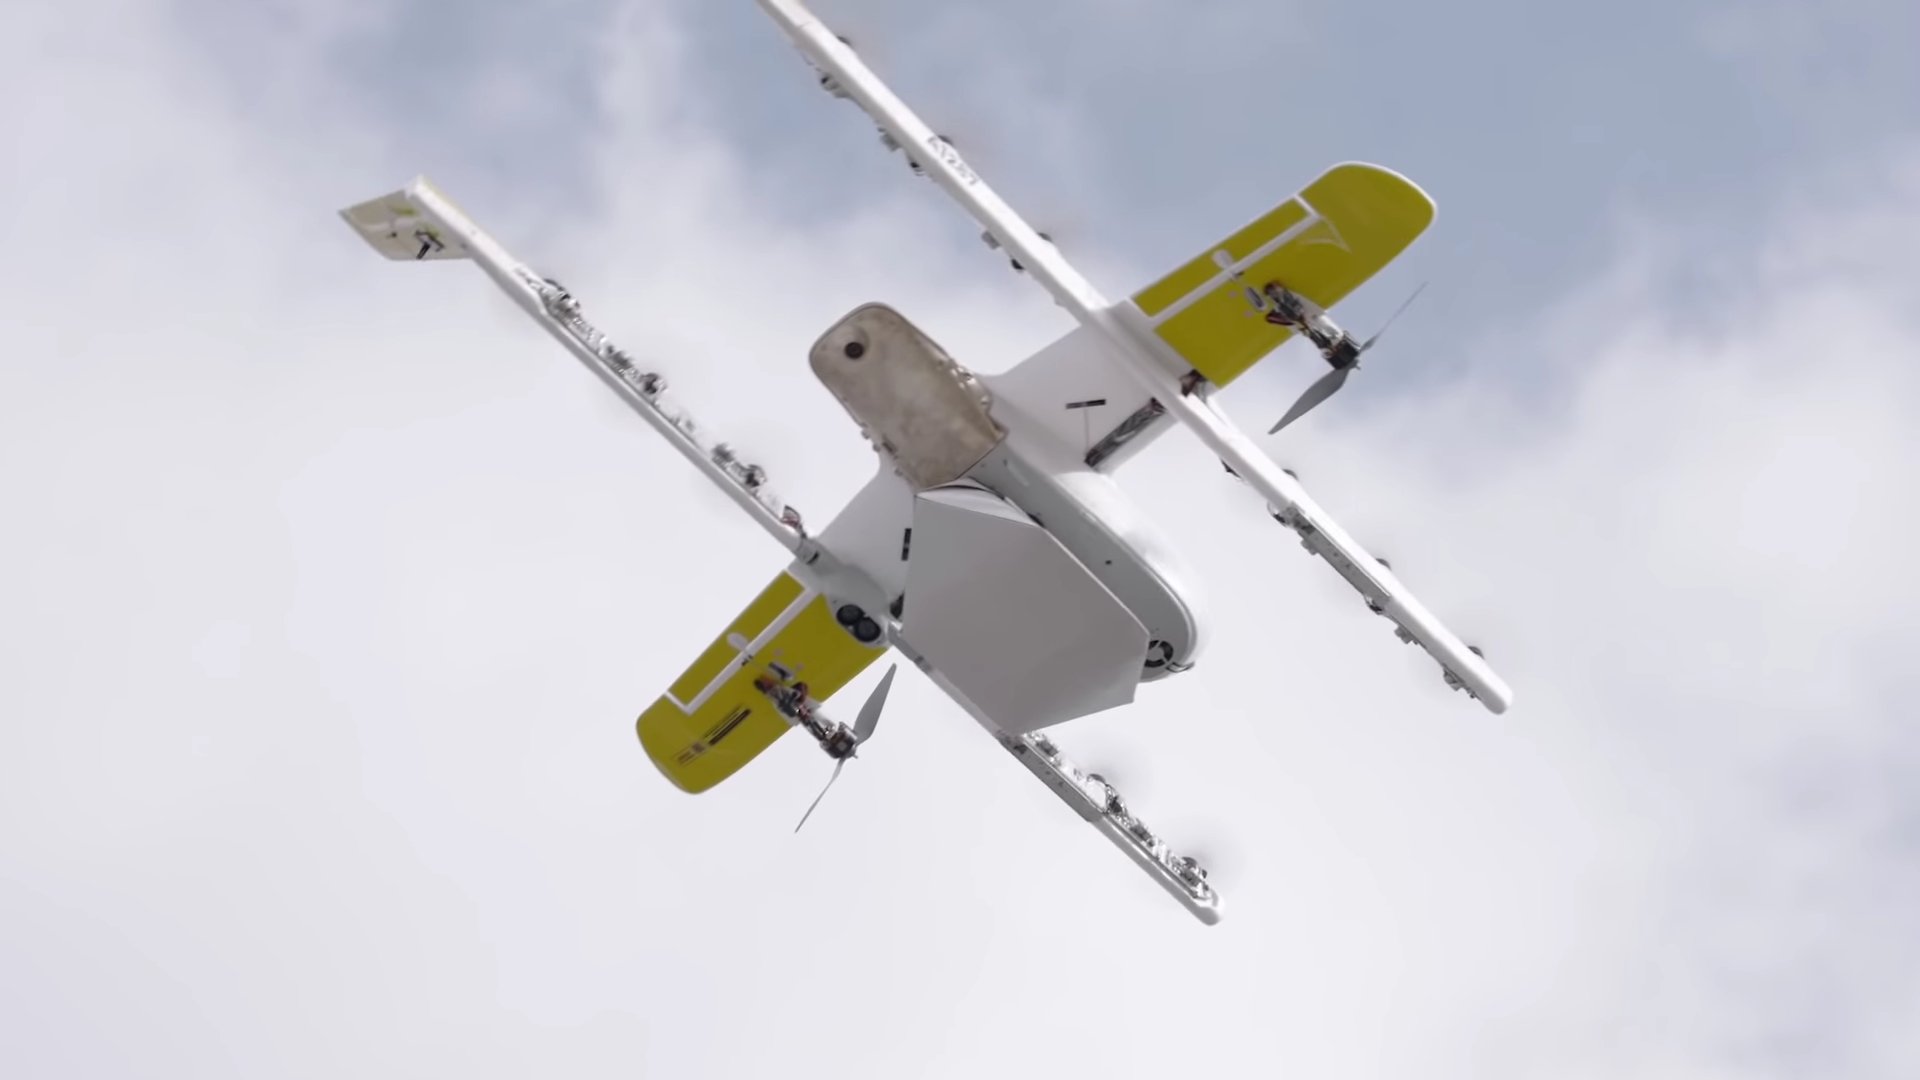 Wing dostarcza przesyłki kurierskie za pomocą dronów